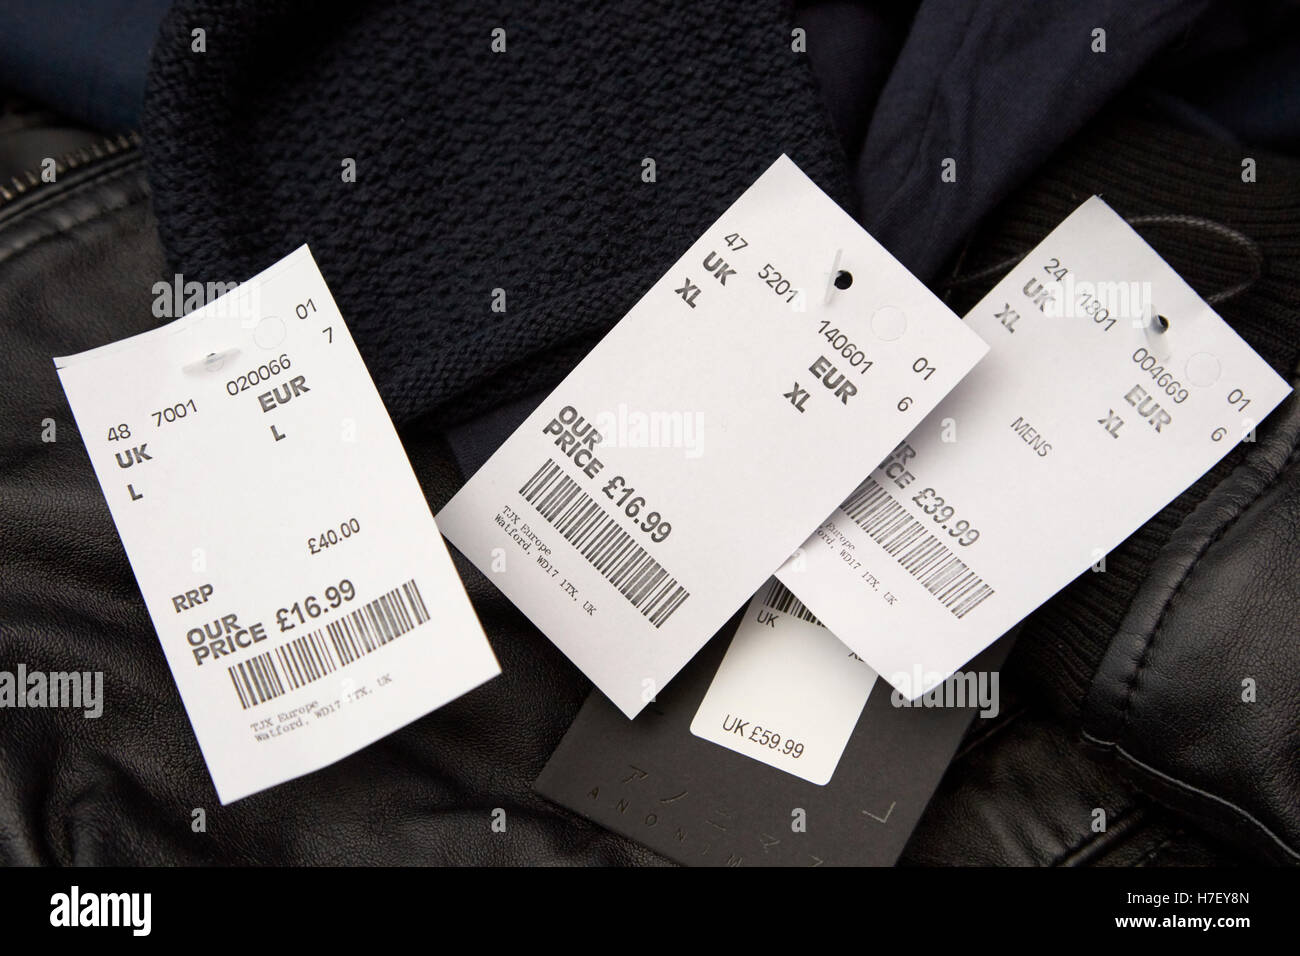 Precio reducido etiquetas en mens ropa Fotografía de stock Alamy